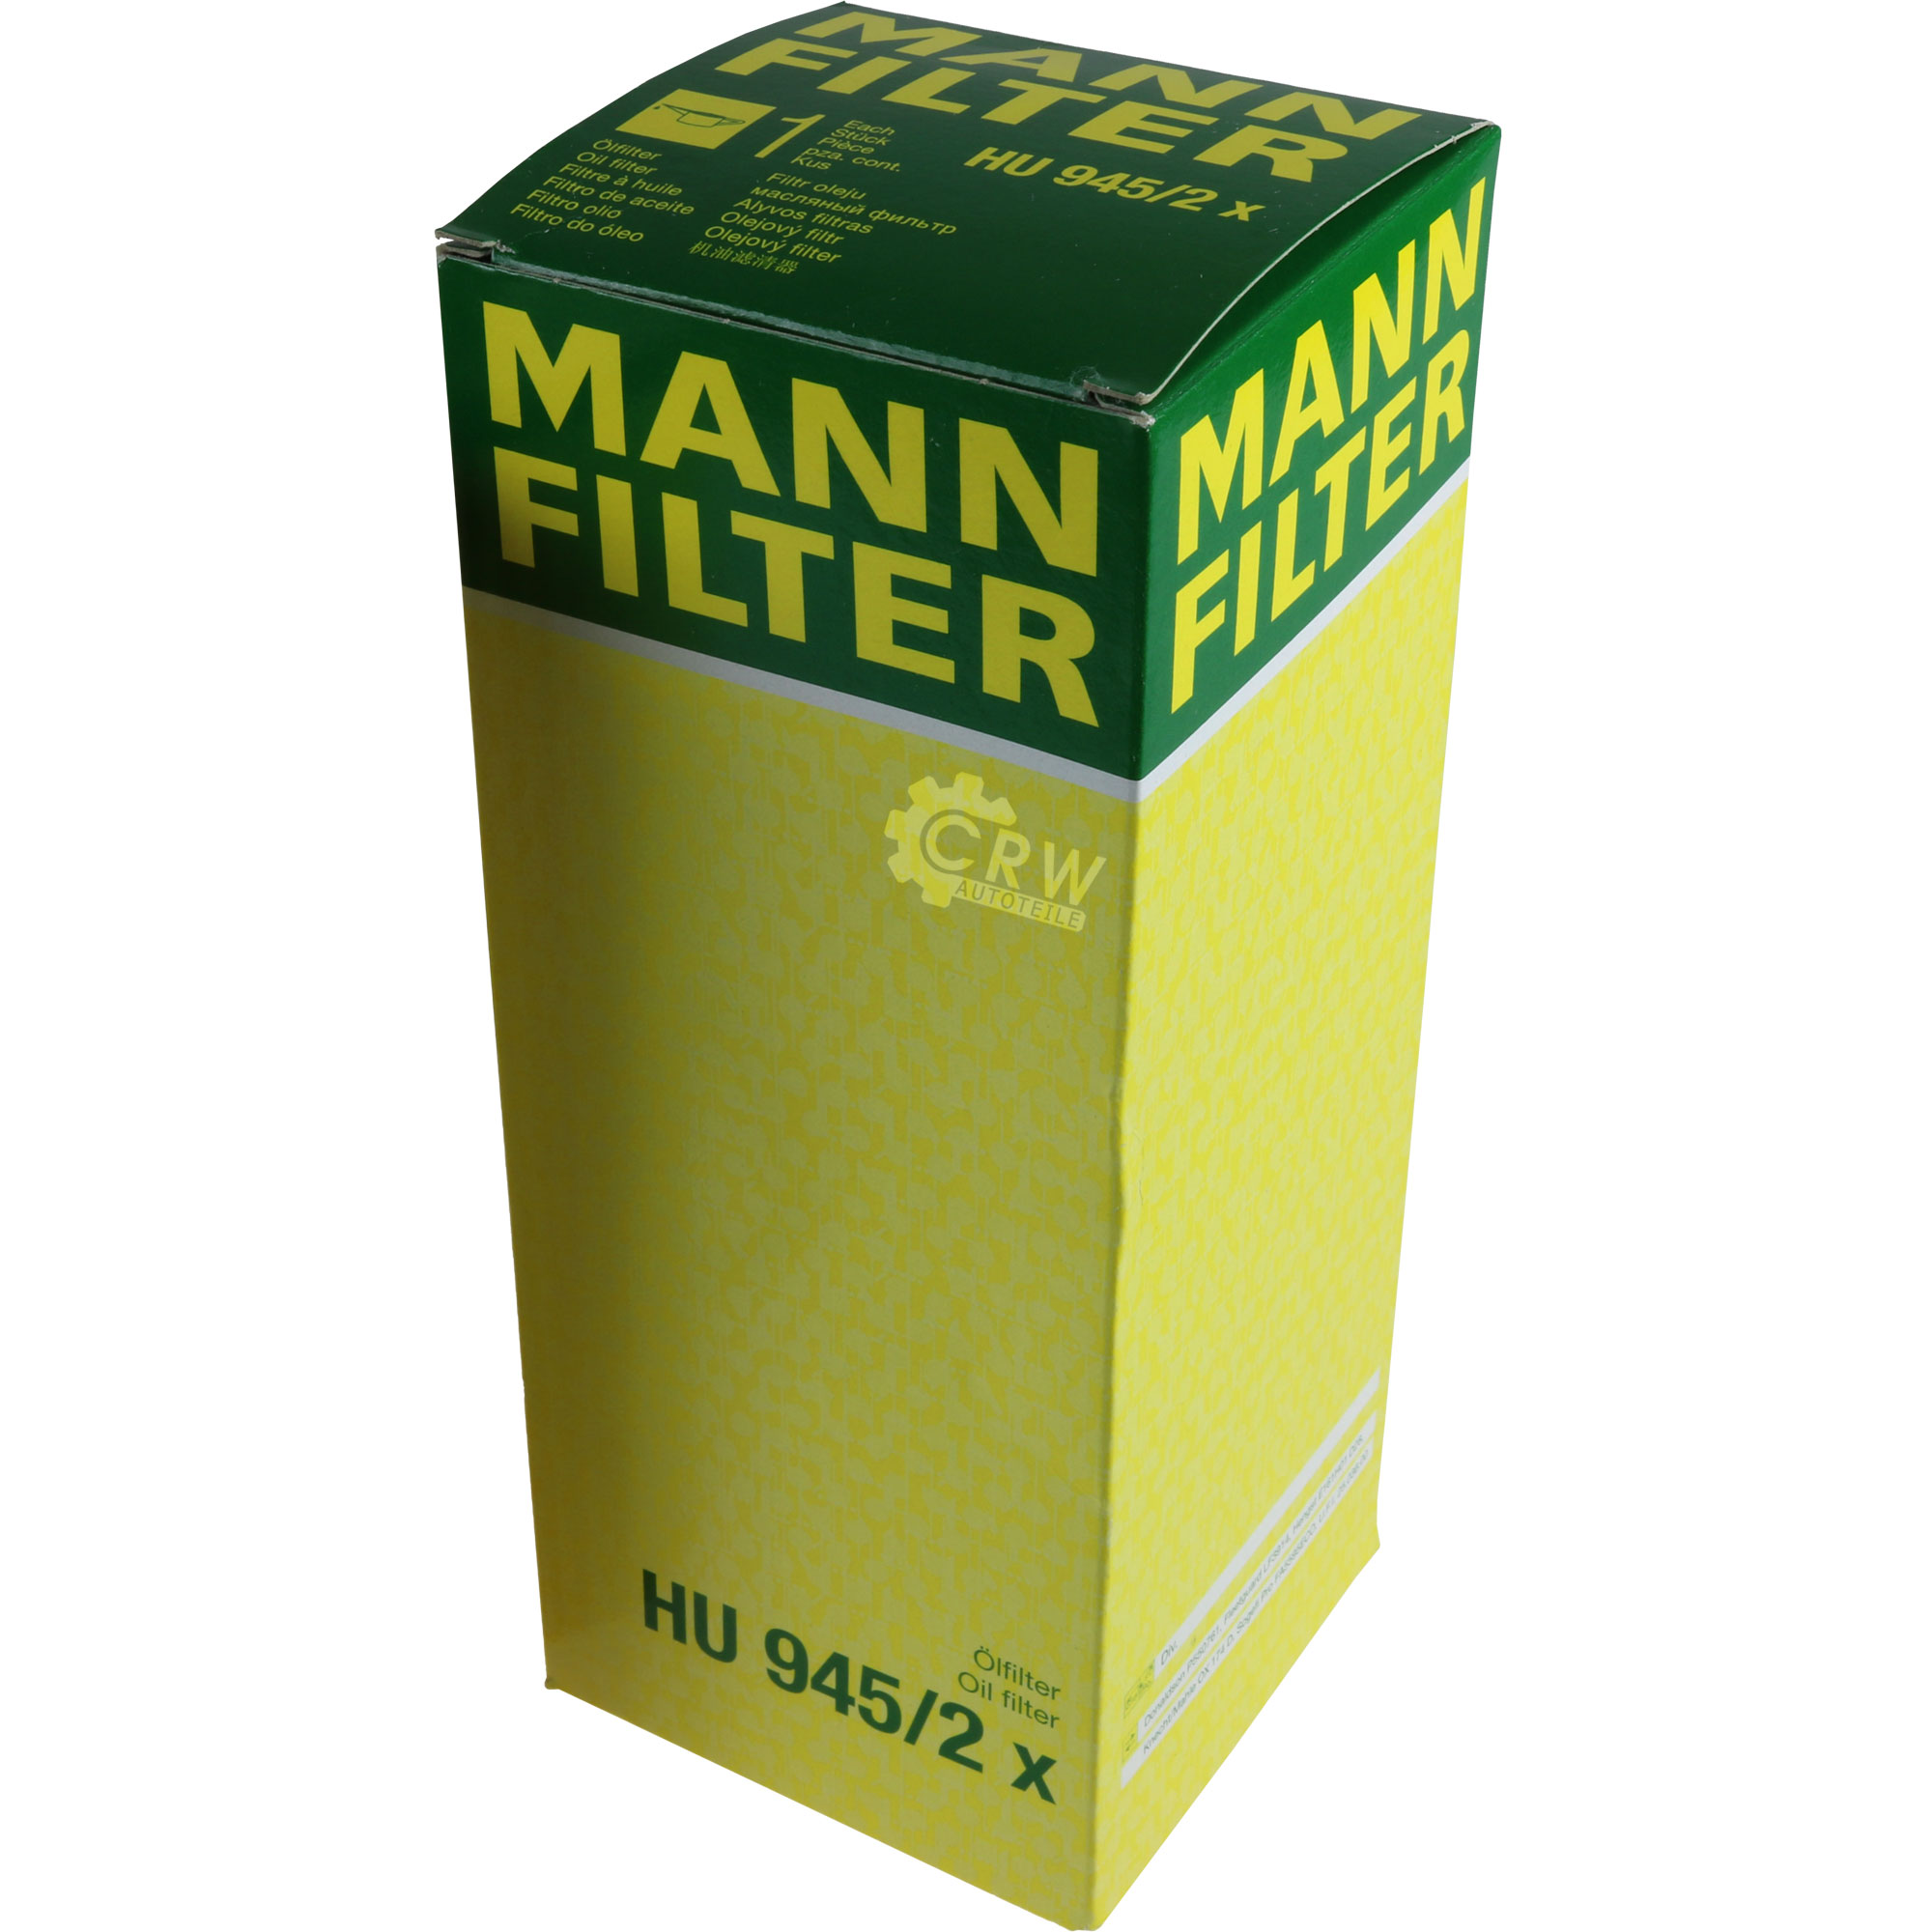 MANN-FILTER Ölfilter Oelfilter HU 945/2 x Oil Filter